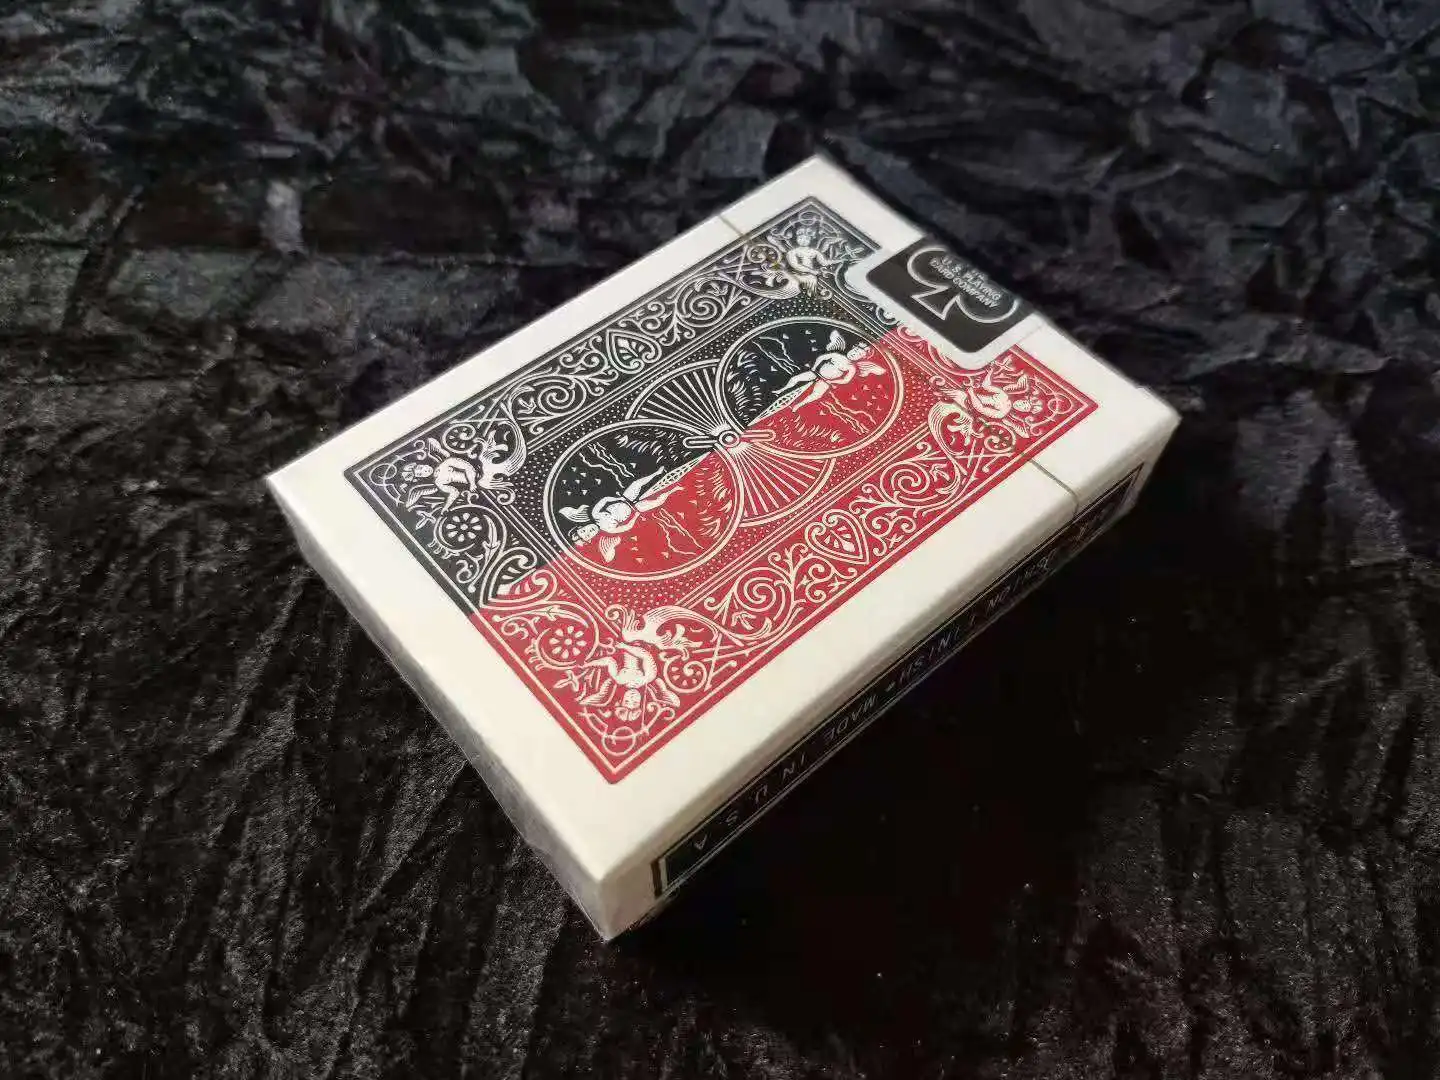 1 колода 52 оттенков красного V1 от Shin Lim волшебные карты трюки, трюк, карты, волшебная колода волшебные аксессуары Комедия